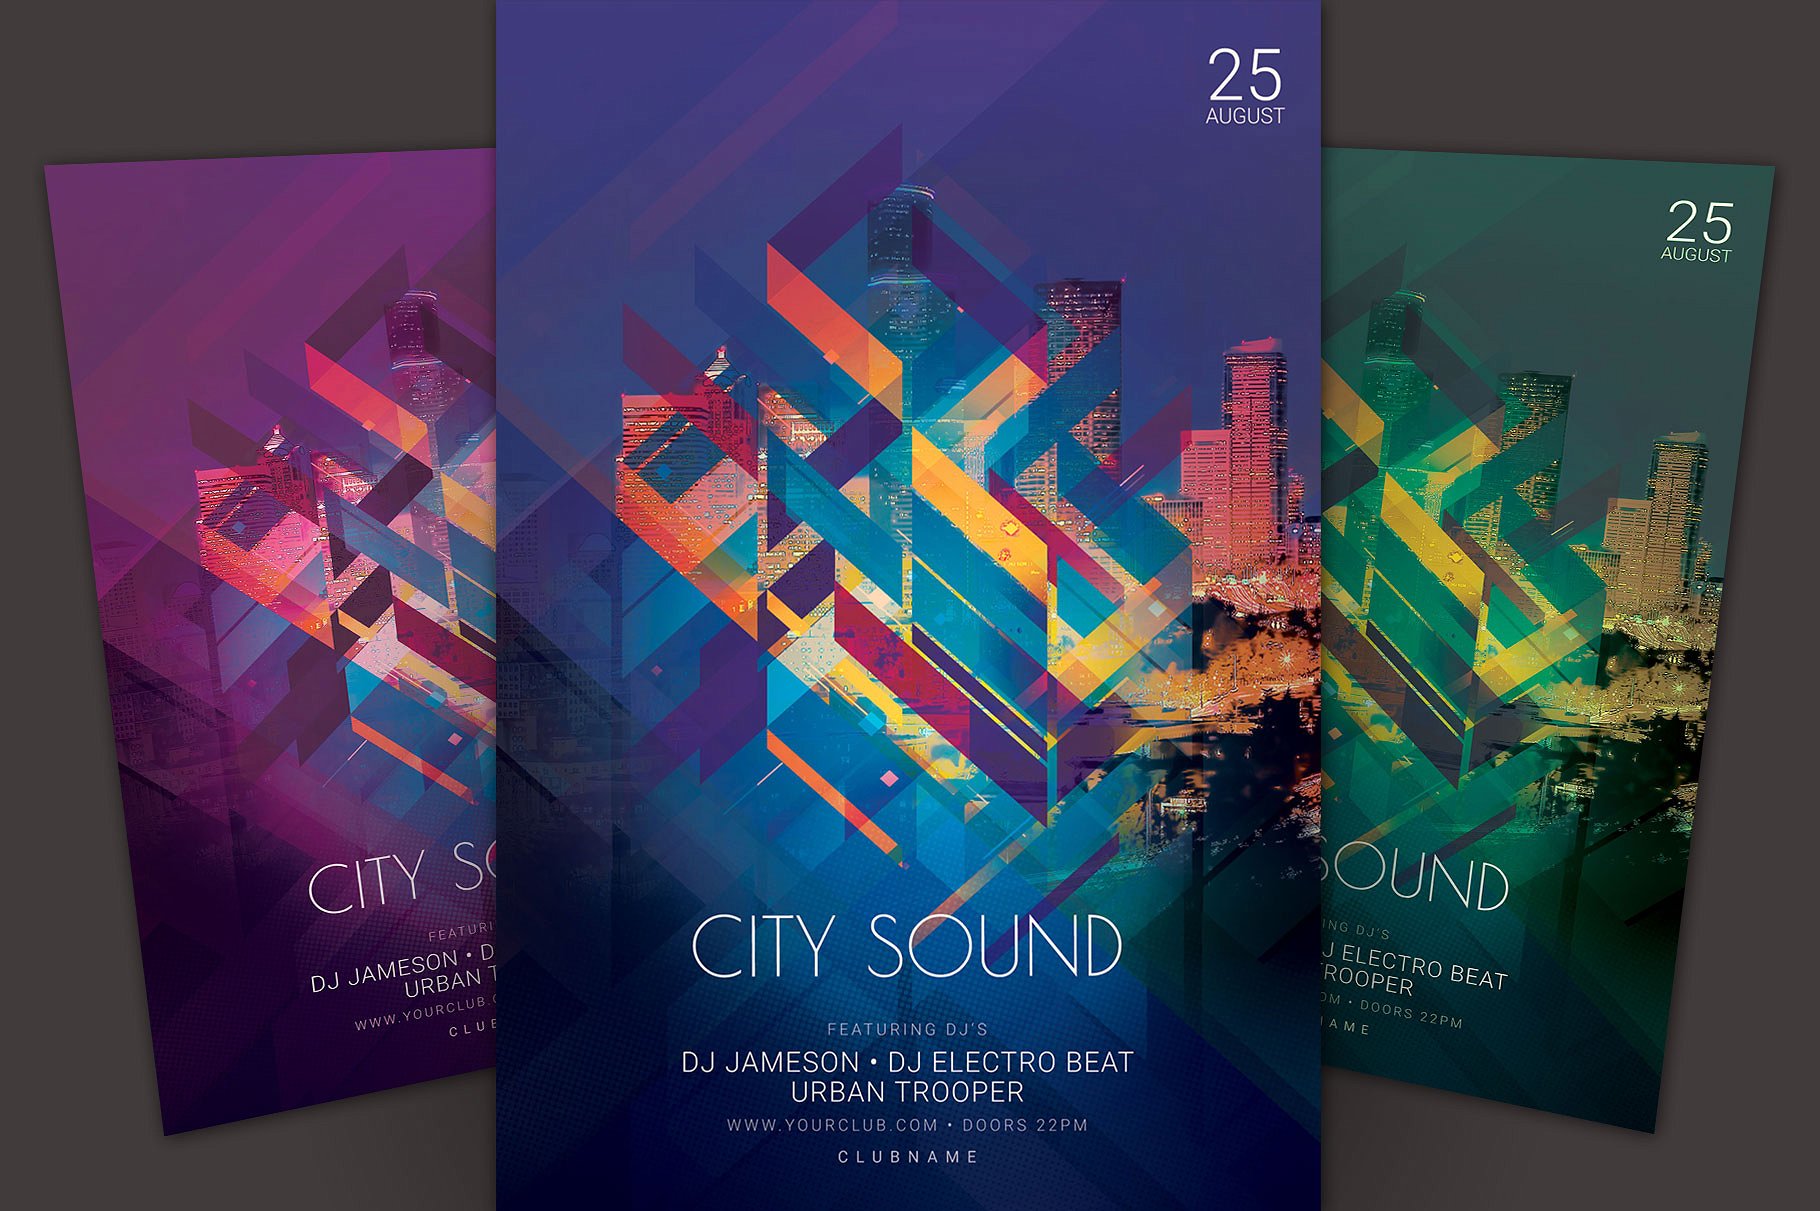 抽象城市之音派对活动宣传单设计模板 City Sound Flyer Template插图